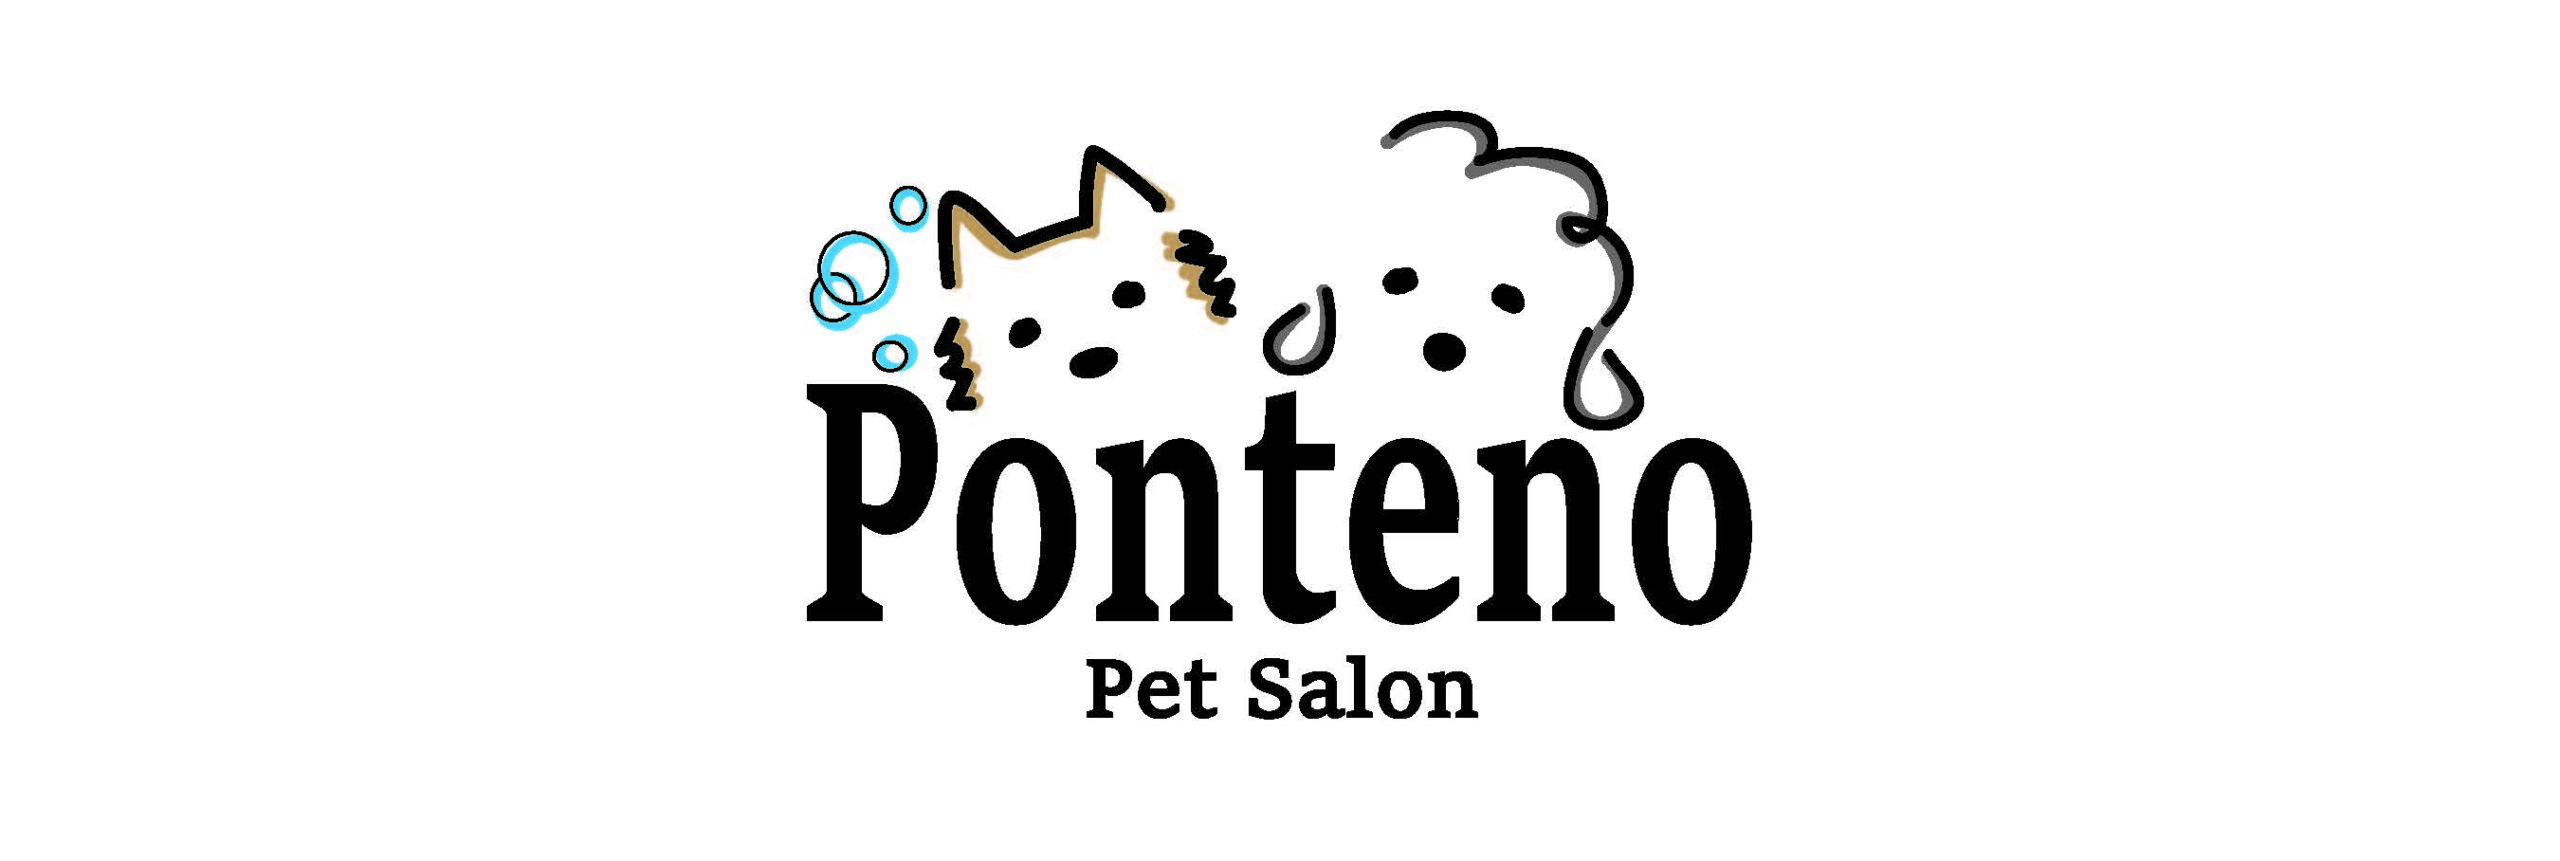 【Pet salon Ponteno(ポンテーノ)】墨田区向島のトリミング・ペットサロン